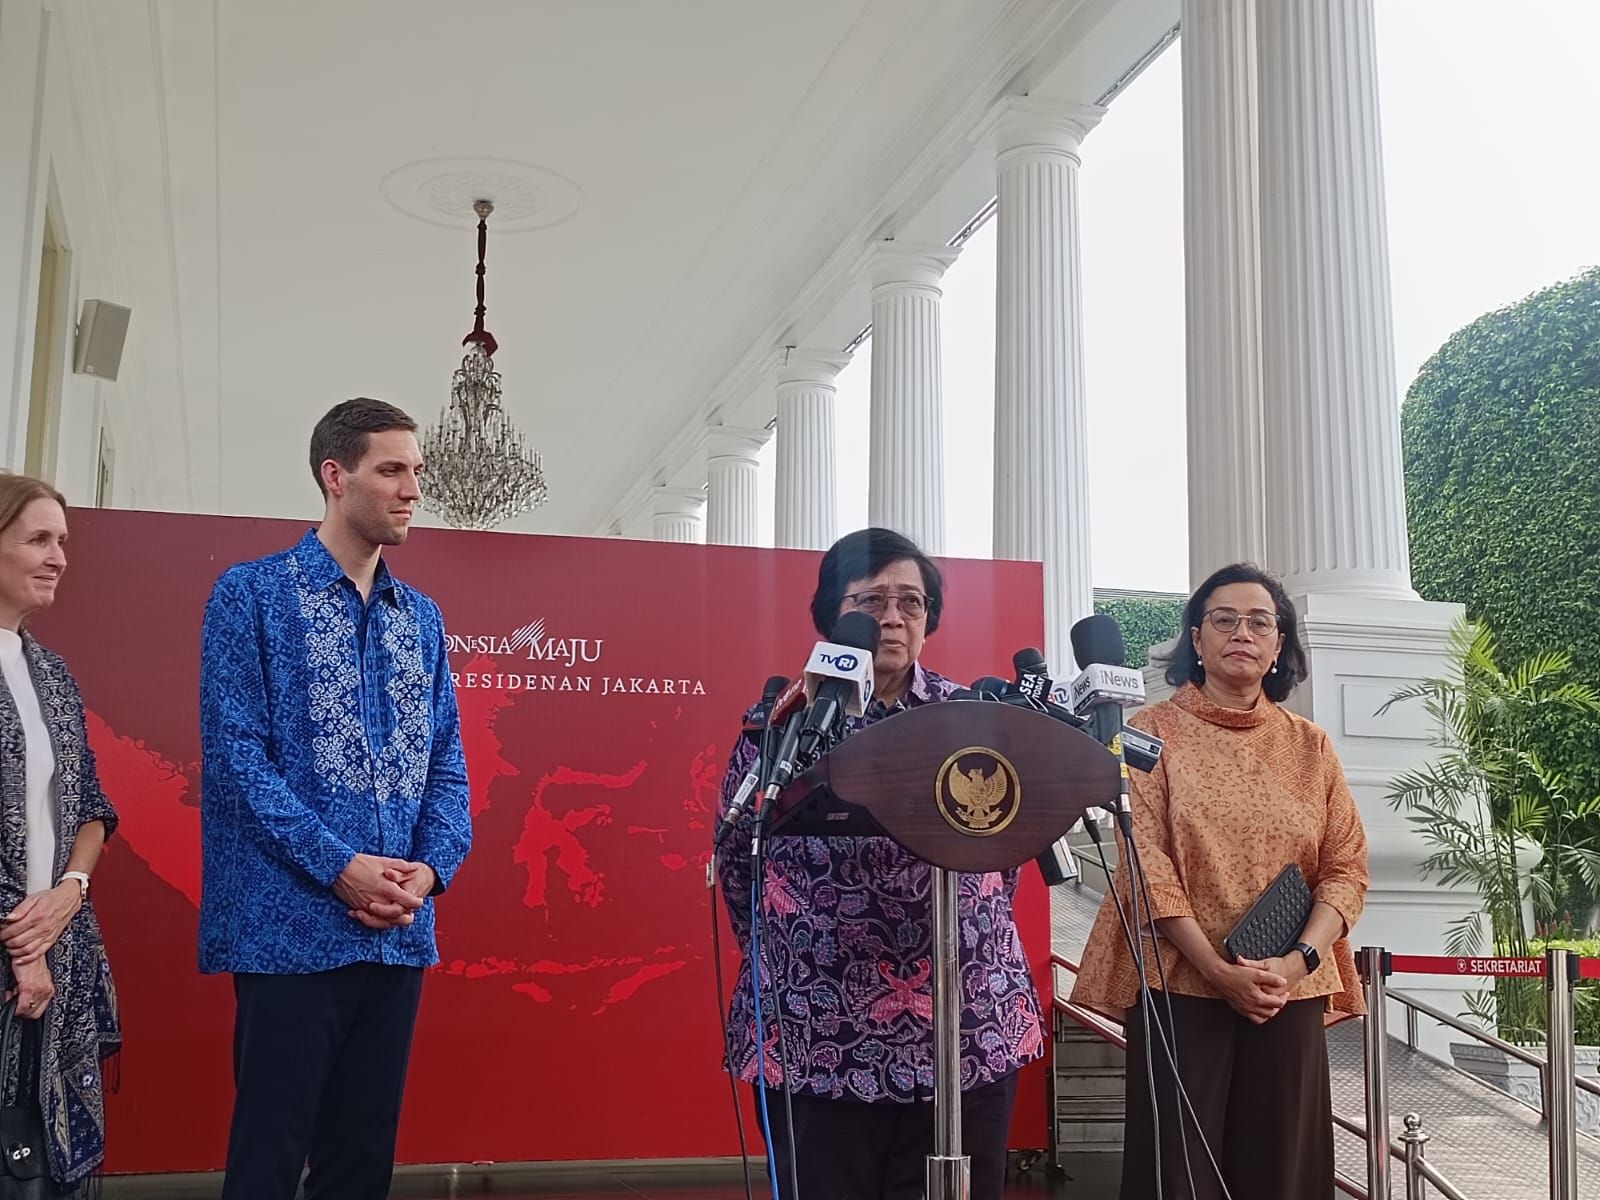 Jokowi Terima Kunjungan Menteri Iklim Norwegia di Istana, Bahas Masalah Sawit hingga Aksi Iklim